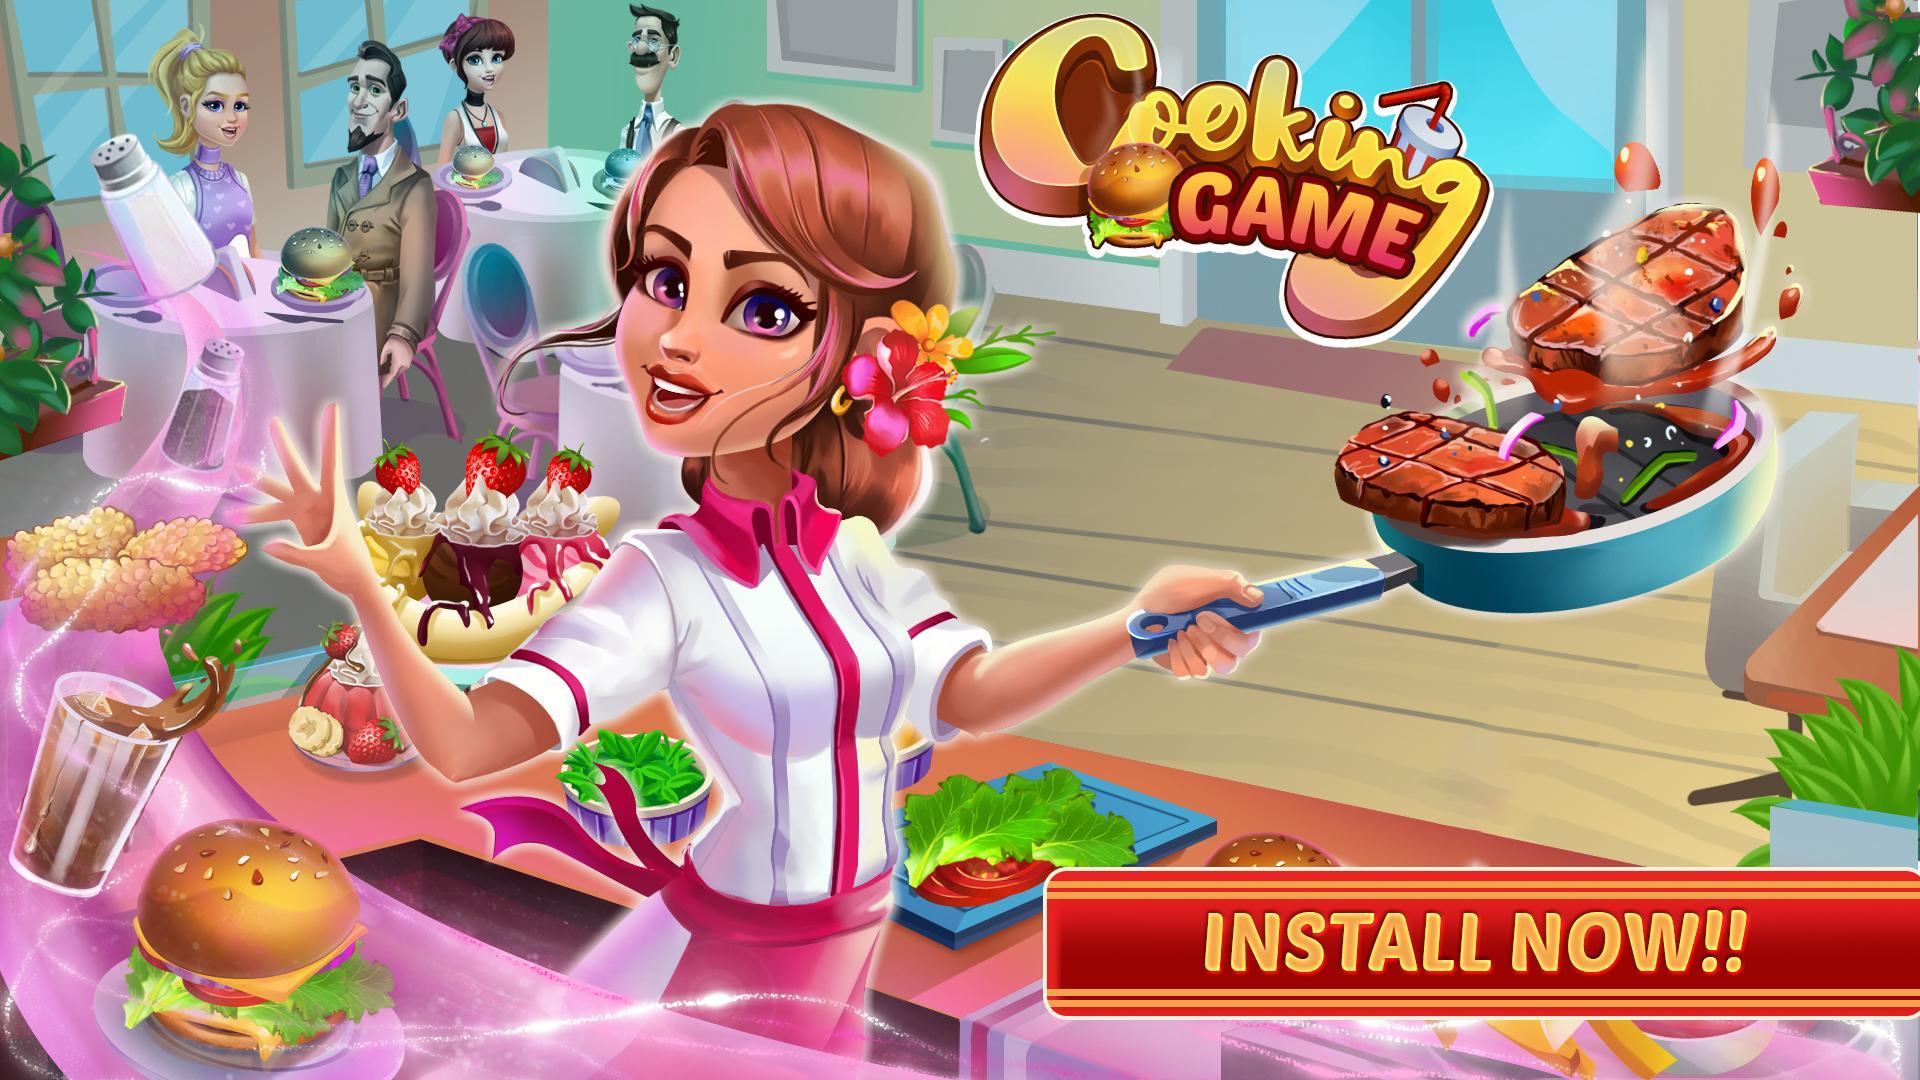 Juegos de cocina para chicas Restaurant Chef Joy for Android - APK Download